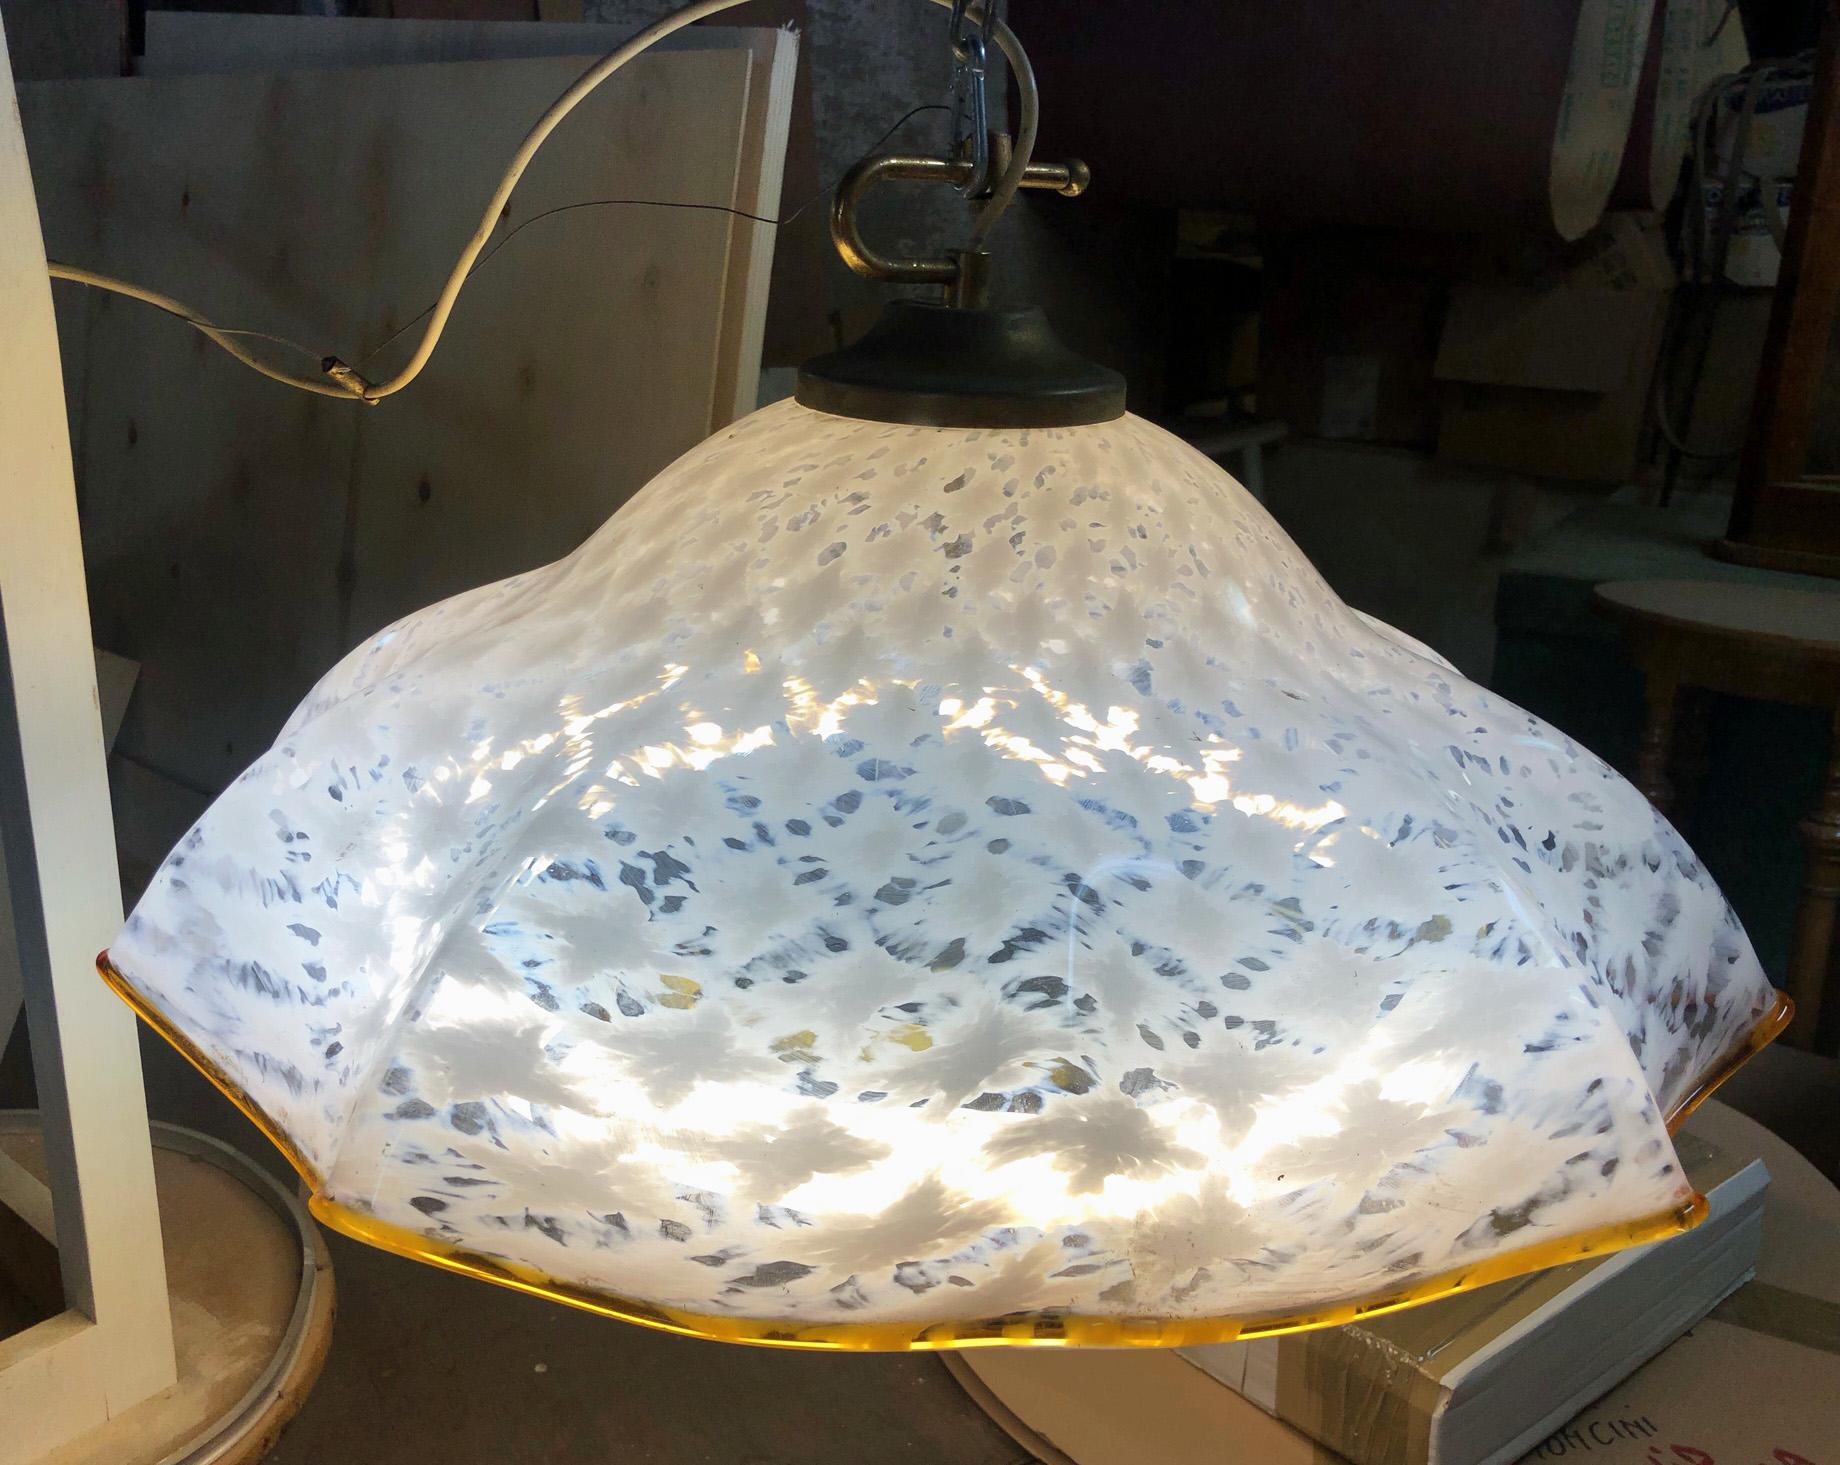 Italienischer Kronleuchter, bestehend aus einem Neonlicht, das in weißes Glas in der besonderen Form einer Blume mit origineller Farbgebung eingesetzt ist. Die Leuchten sind mit Neonröhren ausgestattet und werden mit 220 V betrieben.
Die Farbgebung